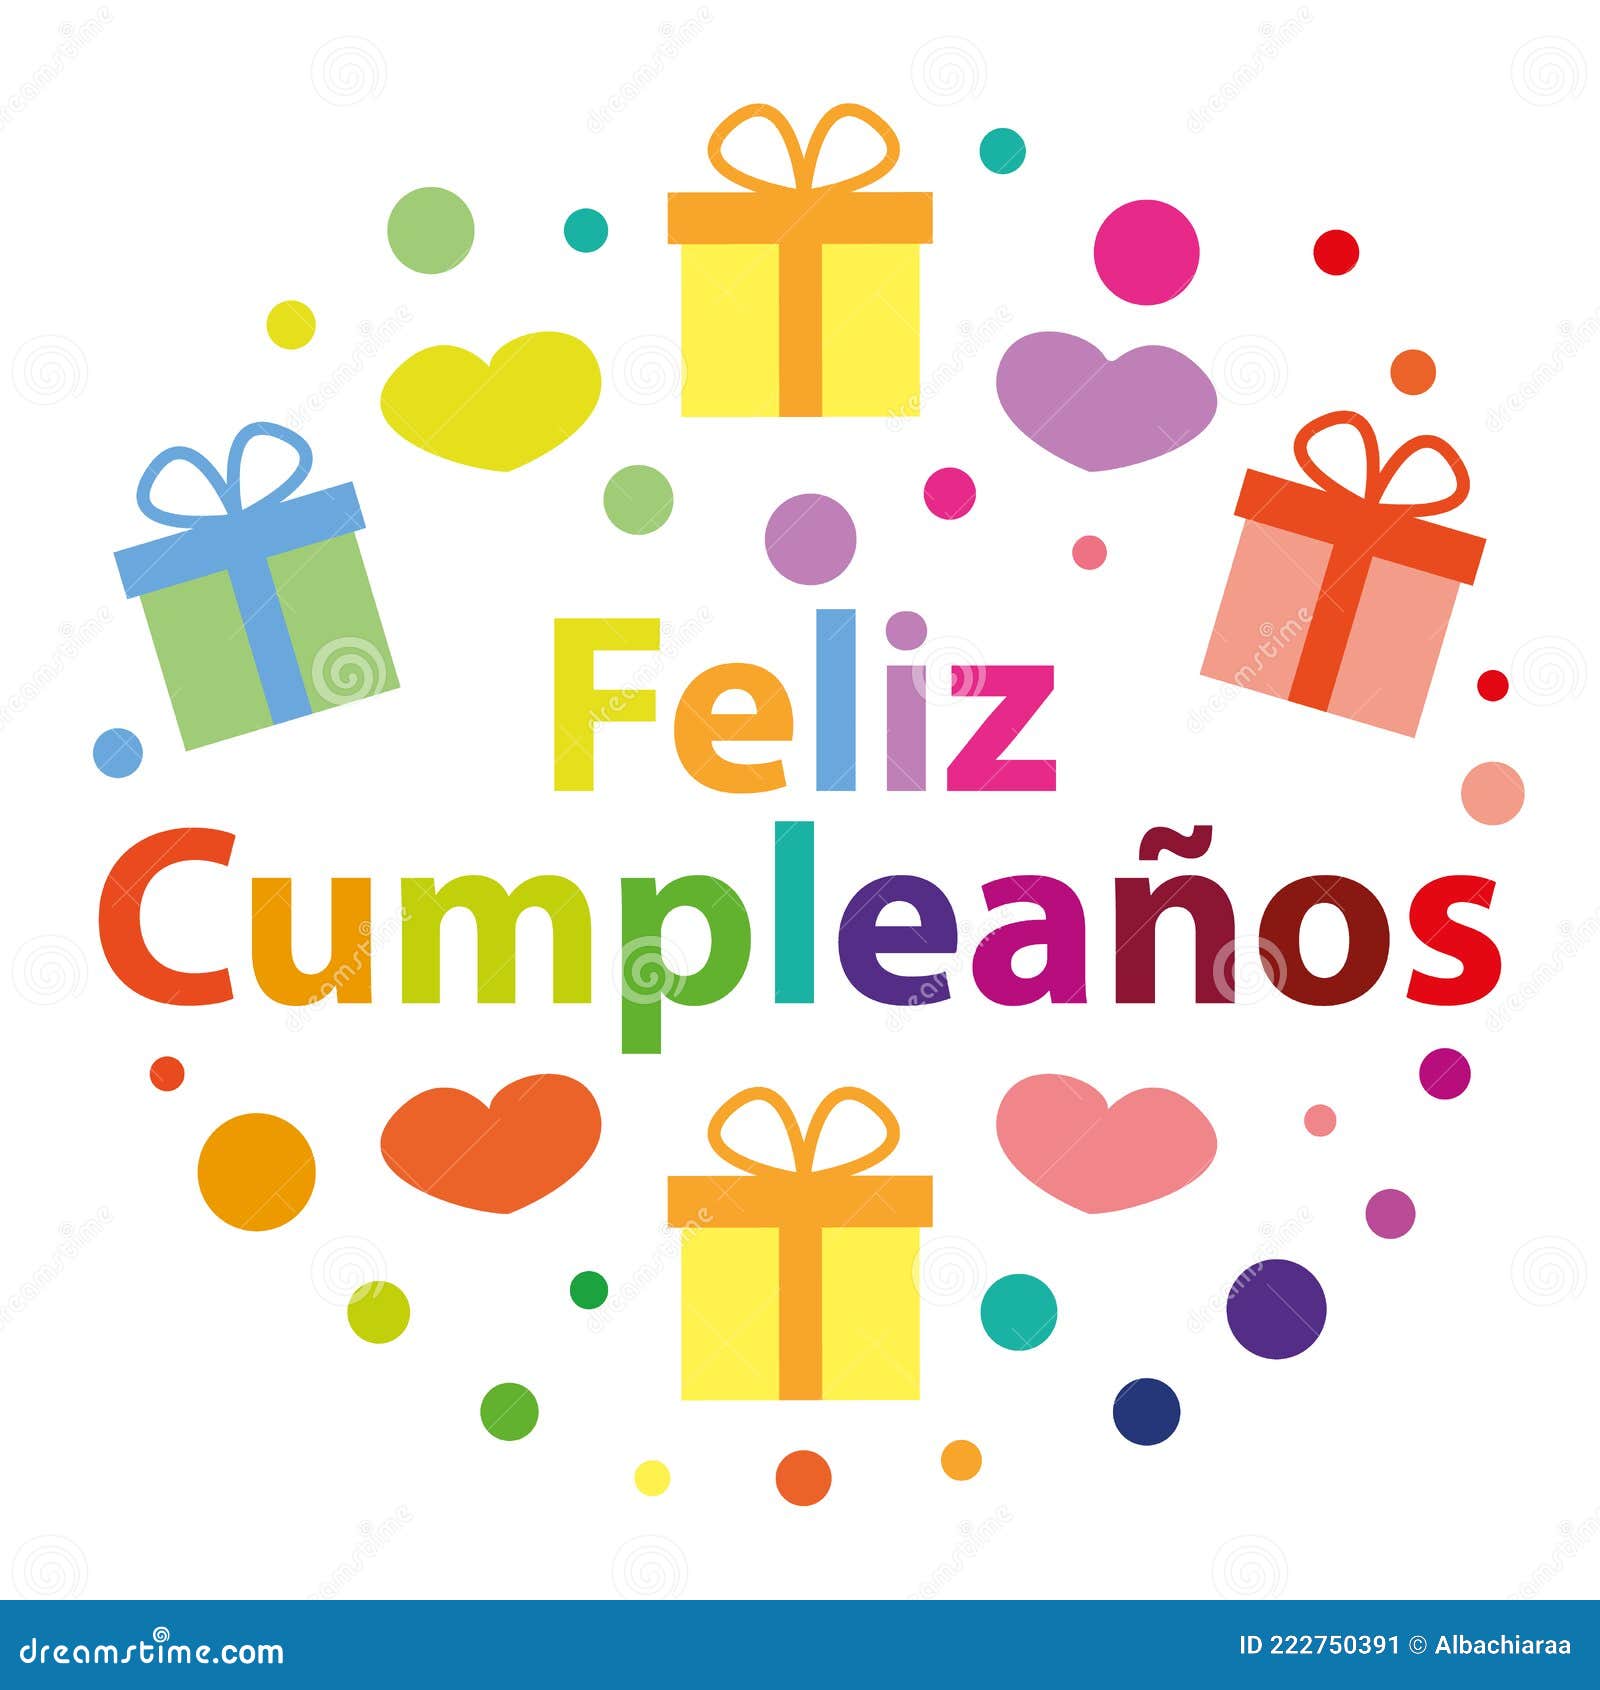 feliz cumpleaÃÂ±os. happy birthday in spanish. colorful  greeting card.